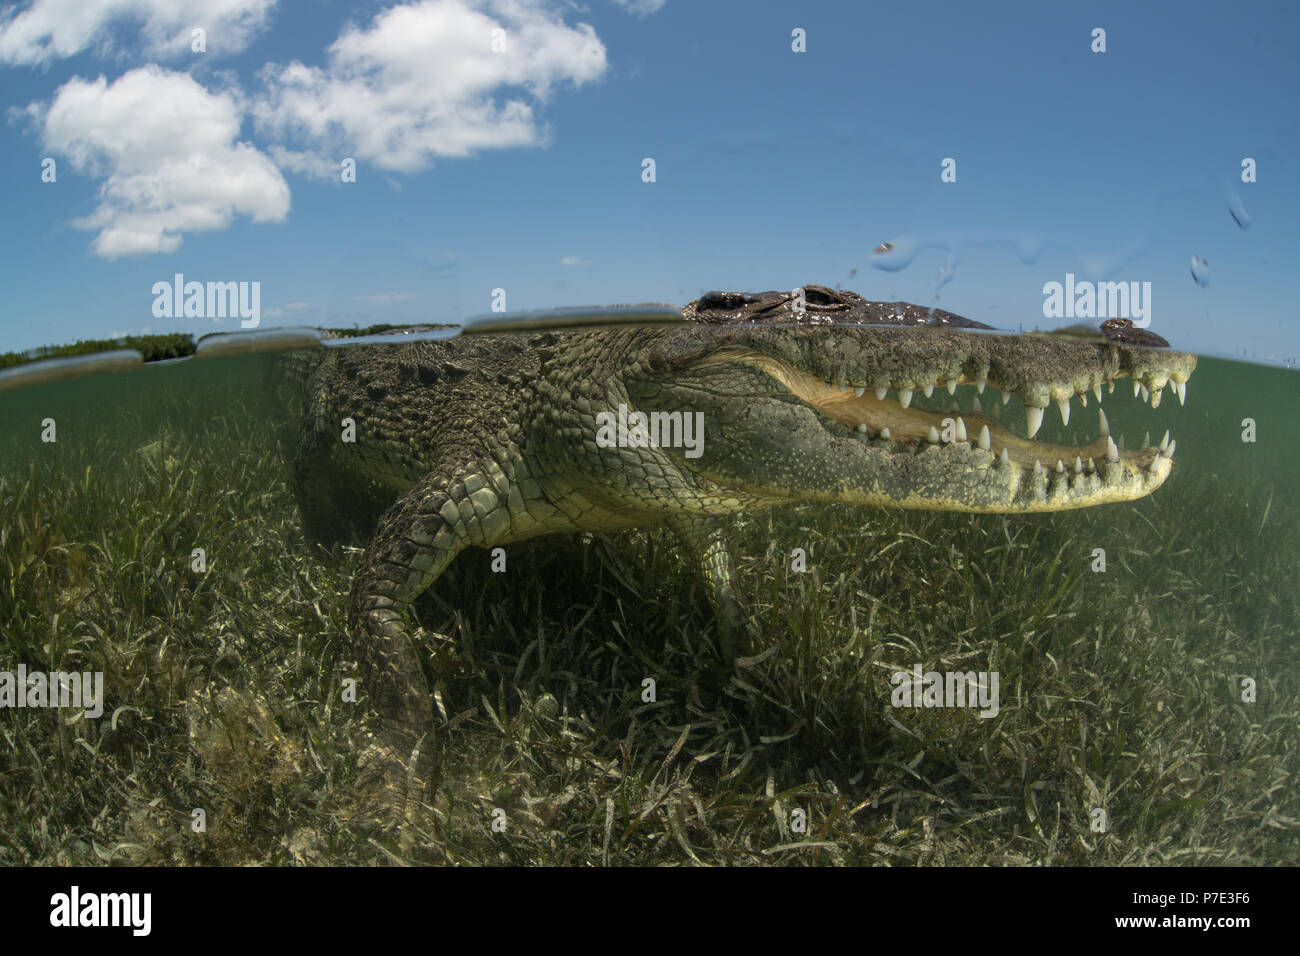 Coccodrillo americano (Crocodylus acutus) in fondali bassi che mostra denti, Chinchorro banche, Xcalak, Quintana Roo, Messico Foto Stock